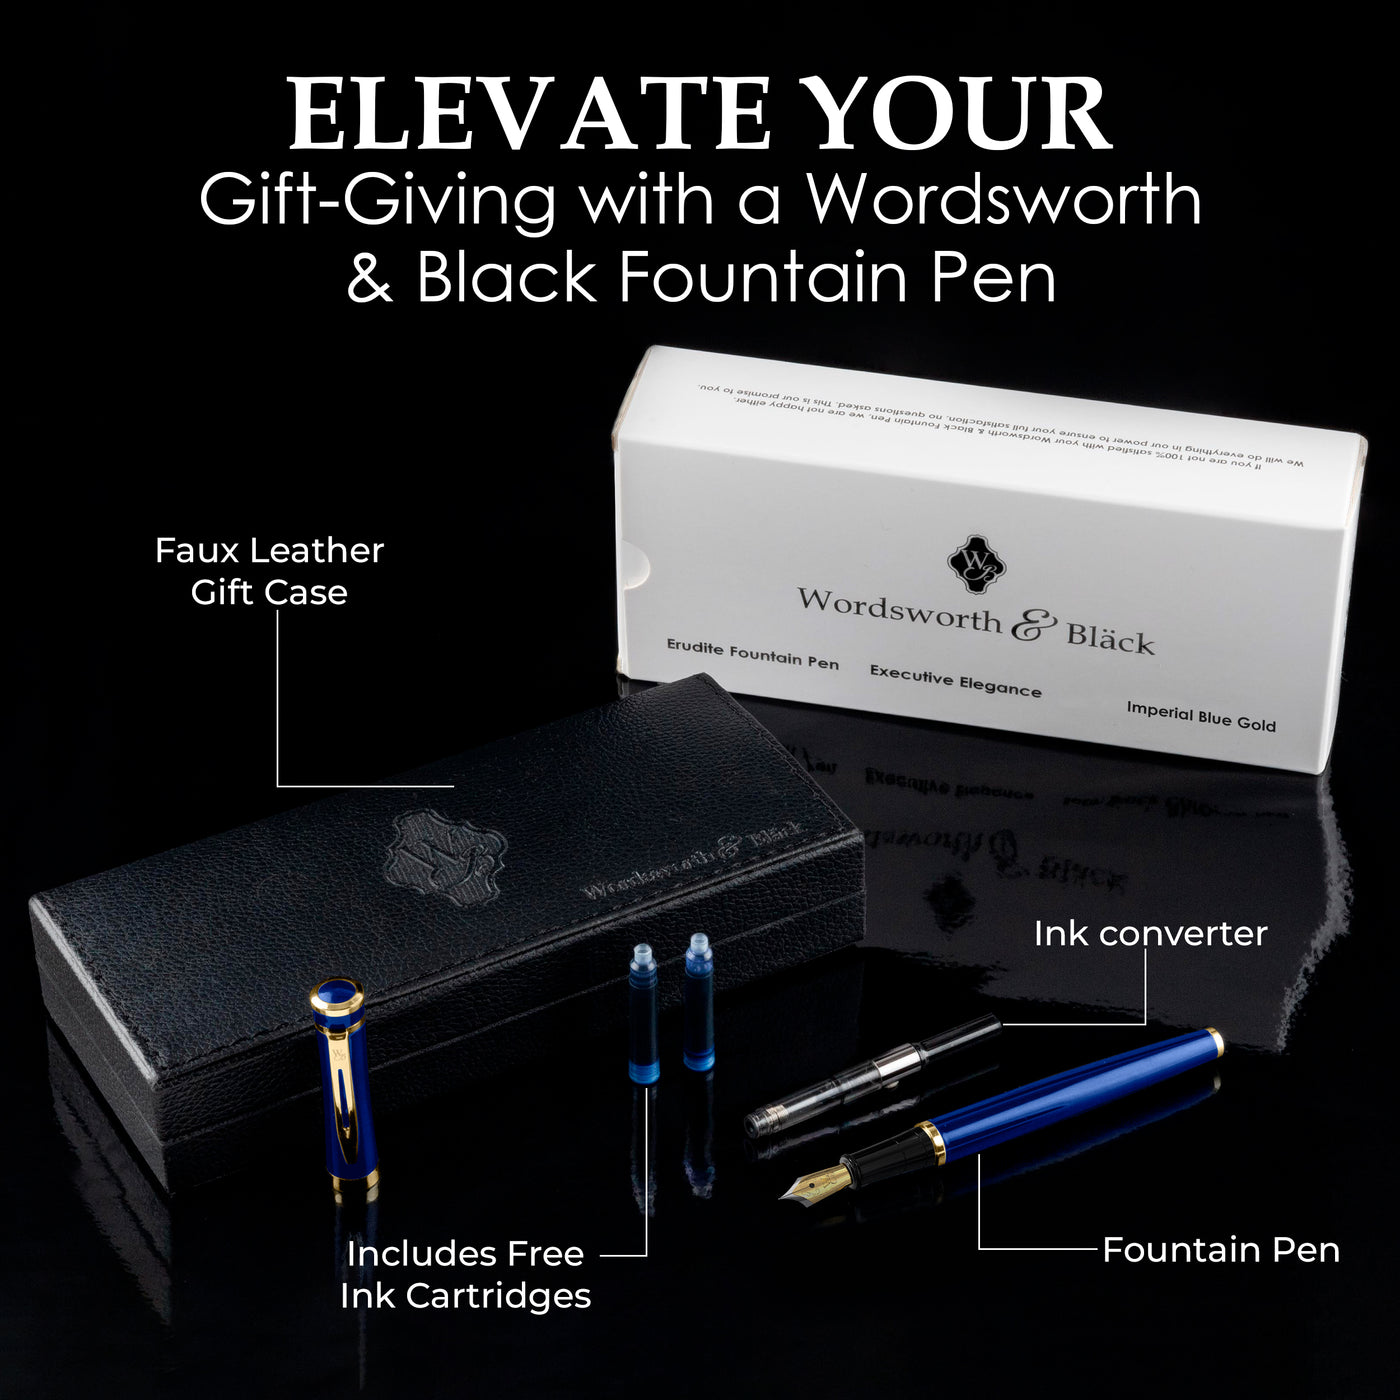 Erudite Fountain Pen Set